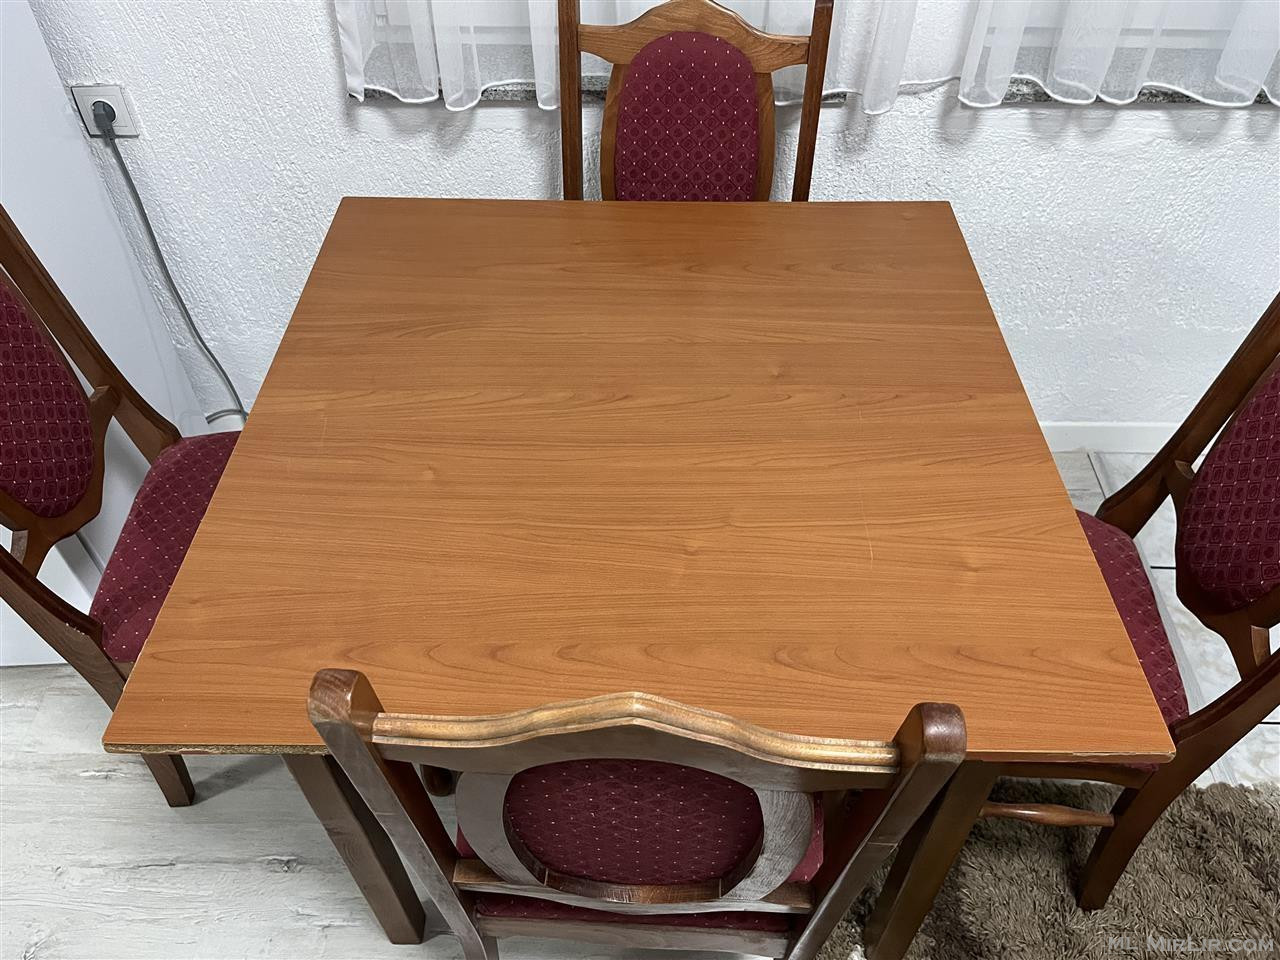 Tavolin me karrige (9 komplete)